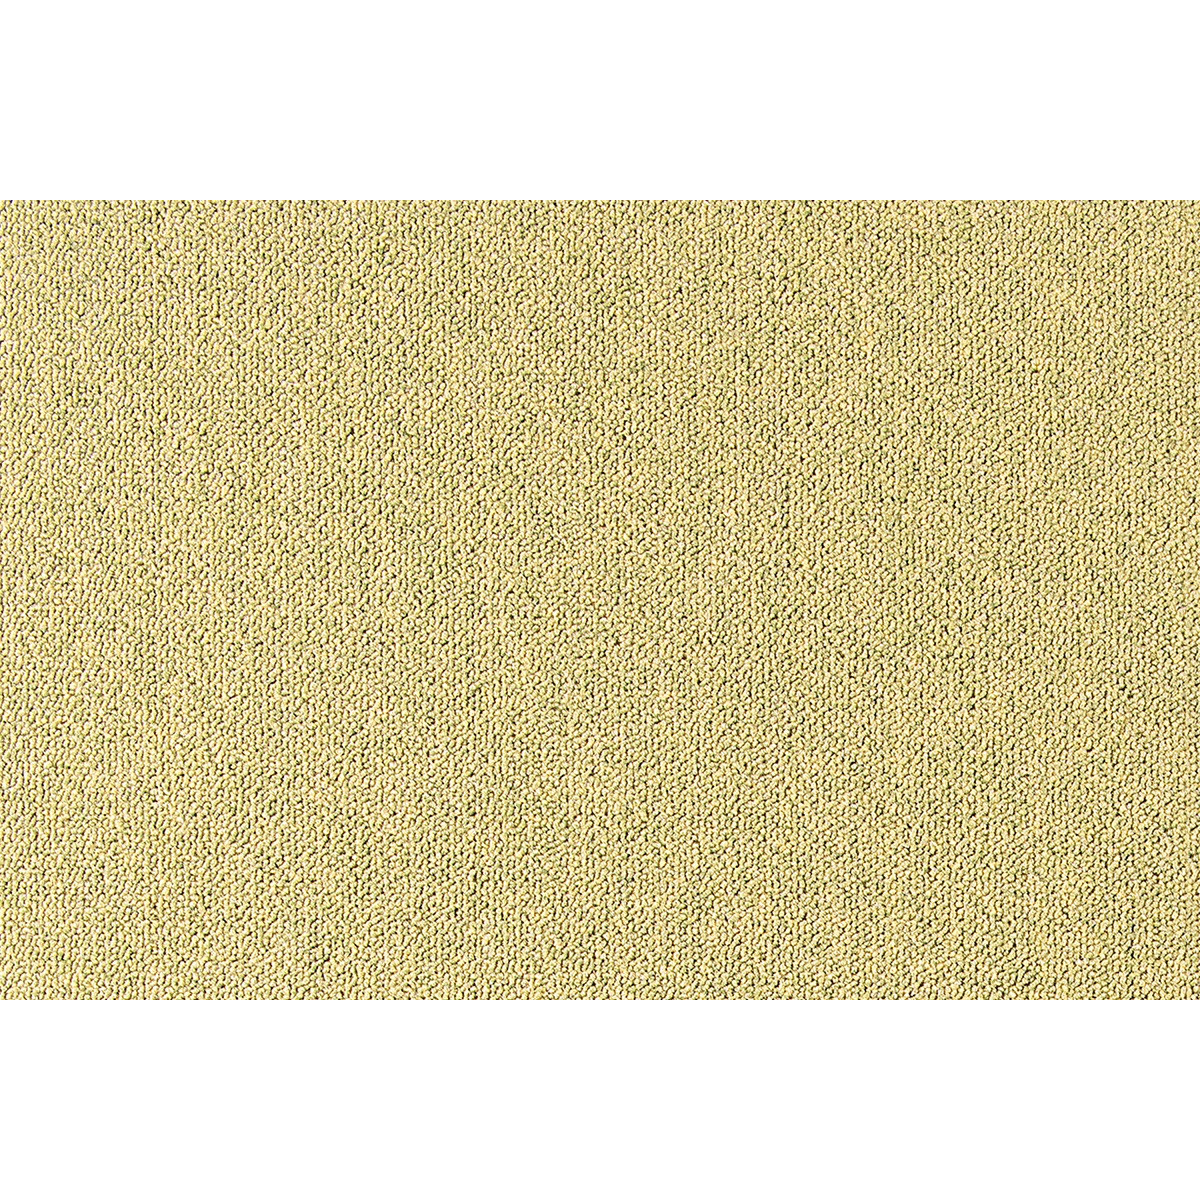 Metrážový koberec Cobalt SDN 64090 - AB žluto-zelený, zátěžový